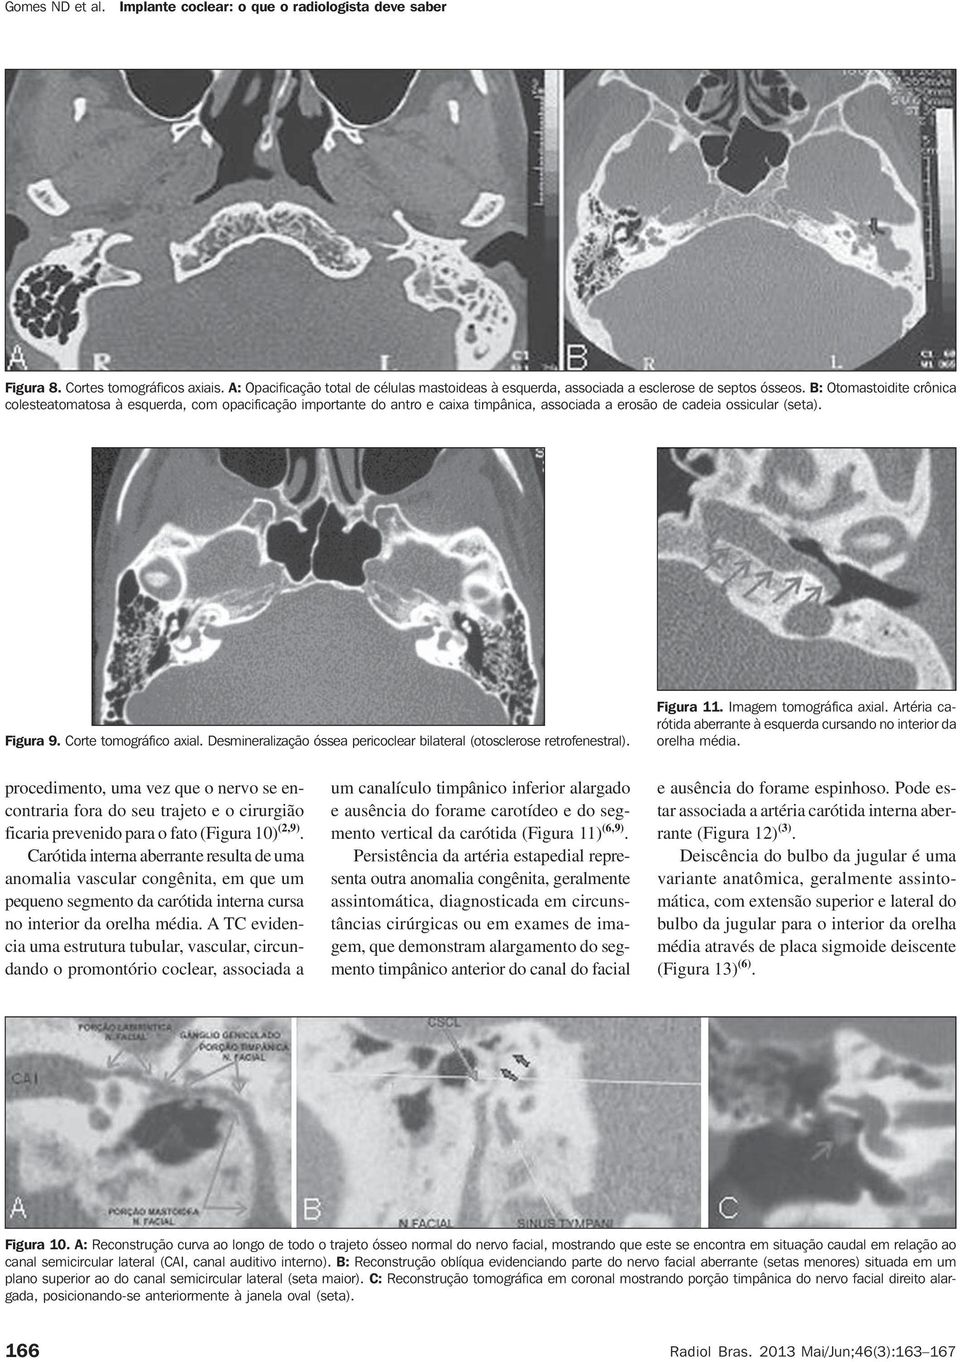 Desmineralização óssea pericoclear bilateral (otosclerose retrofenestral). Figura 11. Imagem tomográfica axial. Artéria carótida aberrante à esquerda cursando no interior da orelha média.